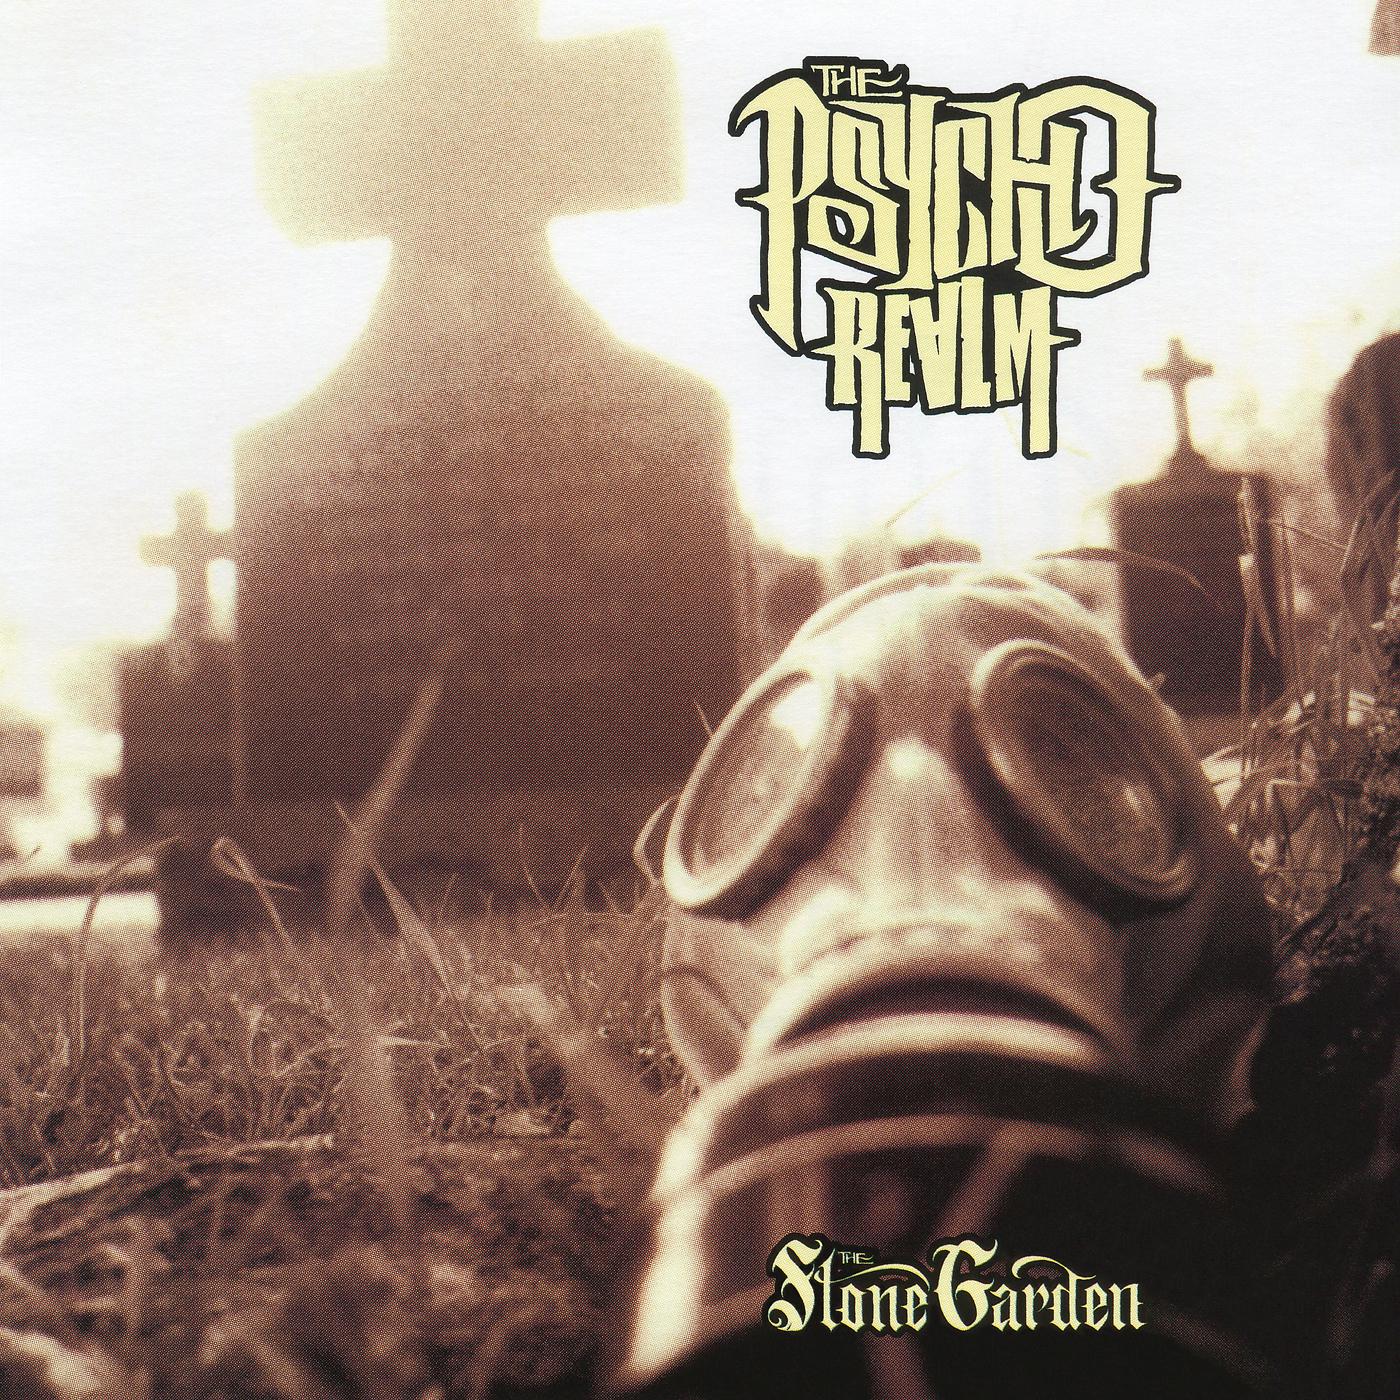 Realm stone. The Psycho Realm 1997. Psycho Realm Stone Garden. The Psycho Realm фото. Psycho Realm - the Stone Garden фото.